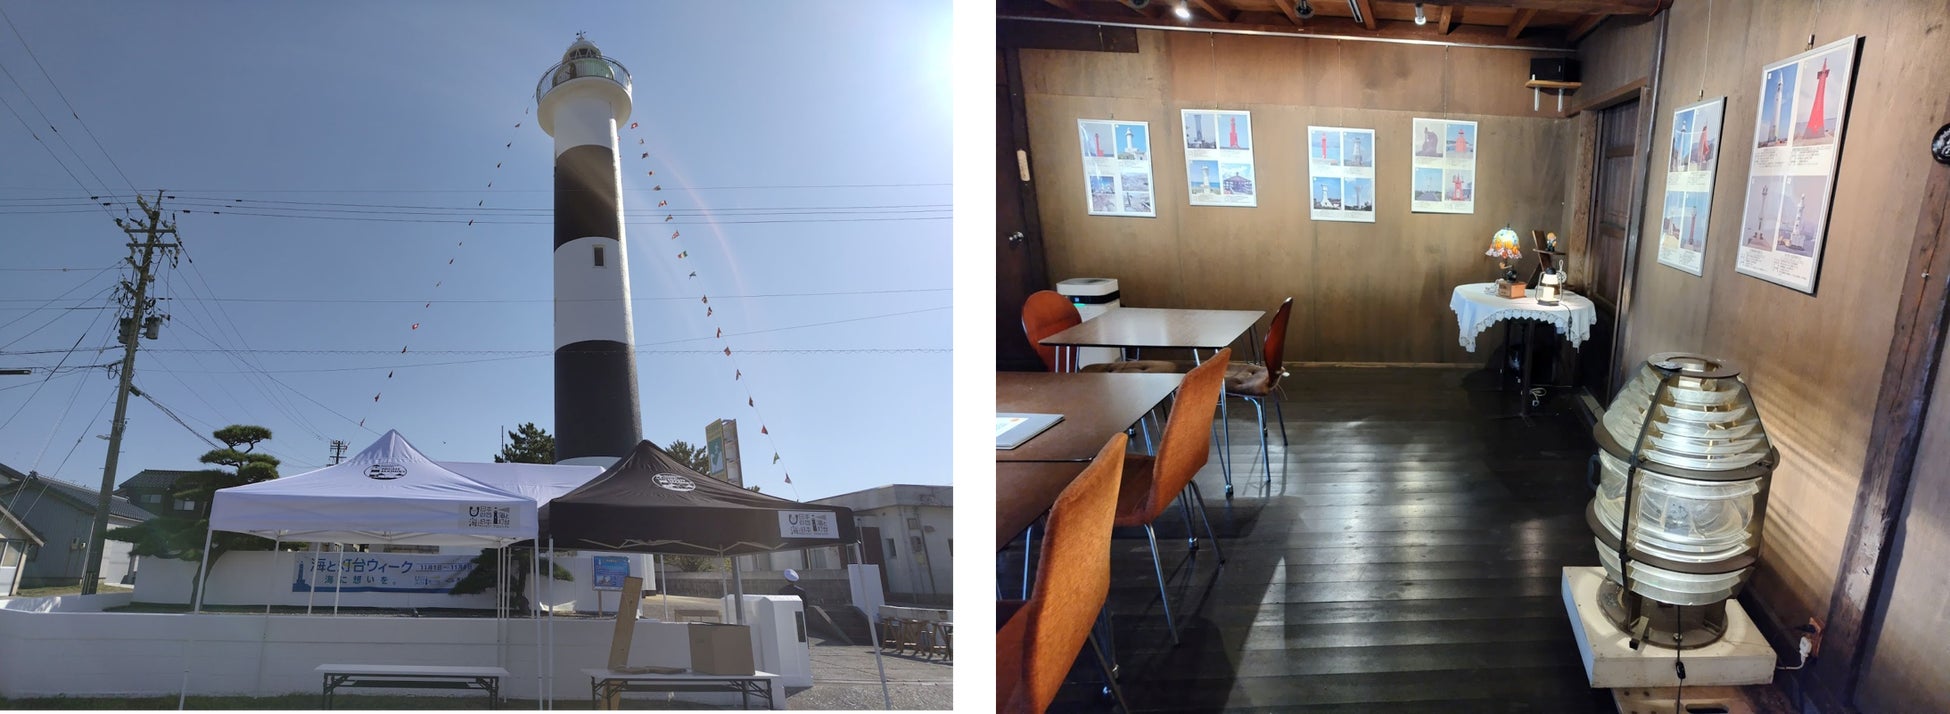 朝から夕方までは伏木海上保安部が灯台開放を実施　　　　　灯台前のカフェでは、全国の灯台写真展も同時実施